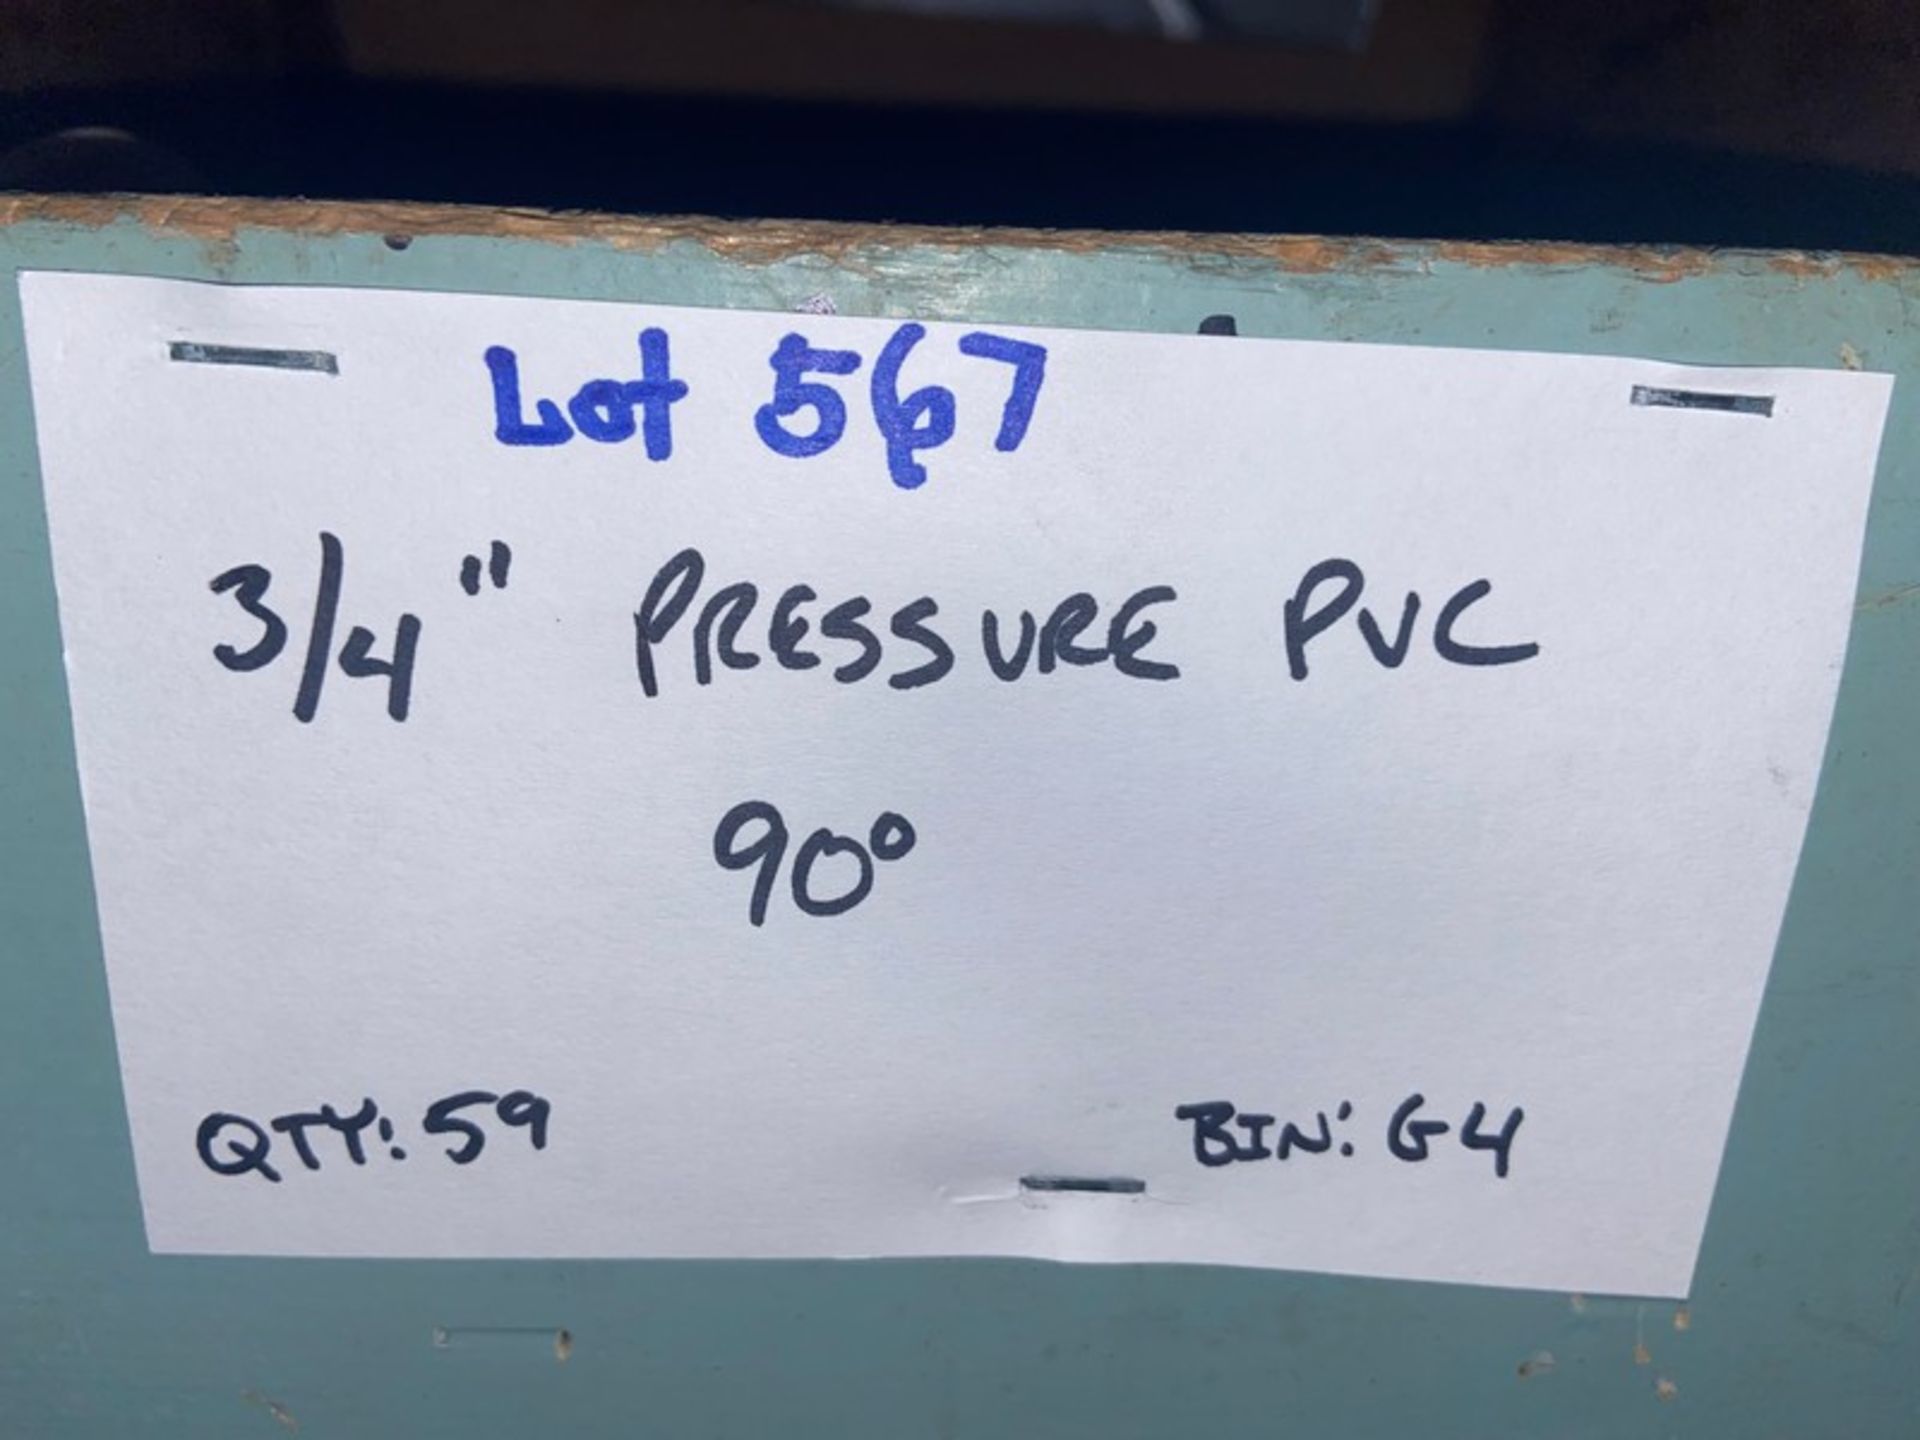 (59) 3/4 Pressure PVC 90’ (Bin:G4) (LOCATED IN MONROEVILLE, PA) - Bild 4 aus 6